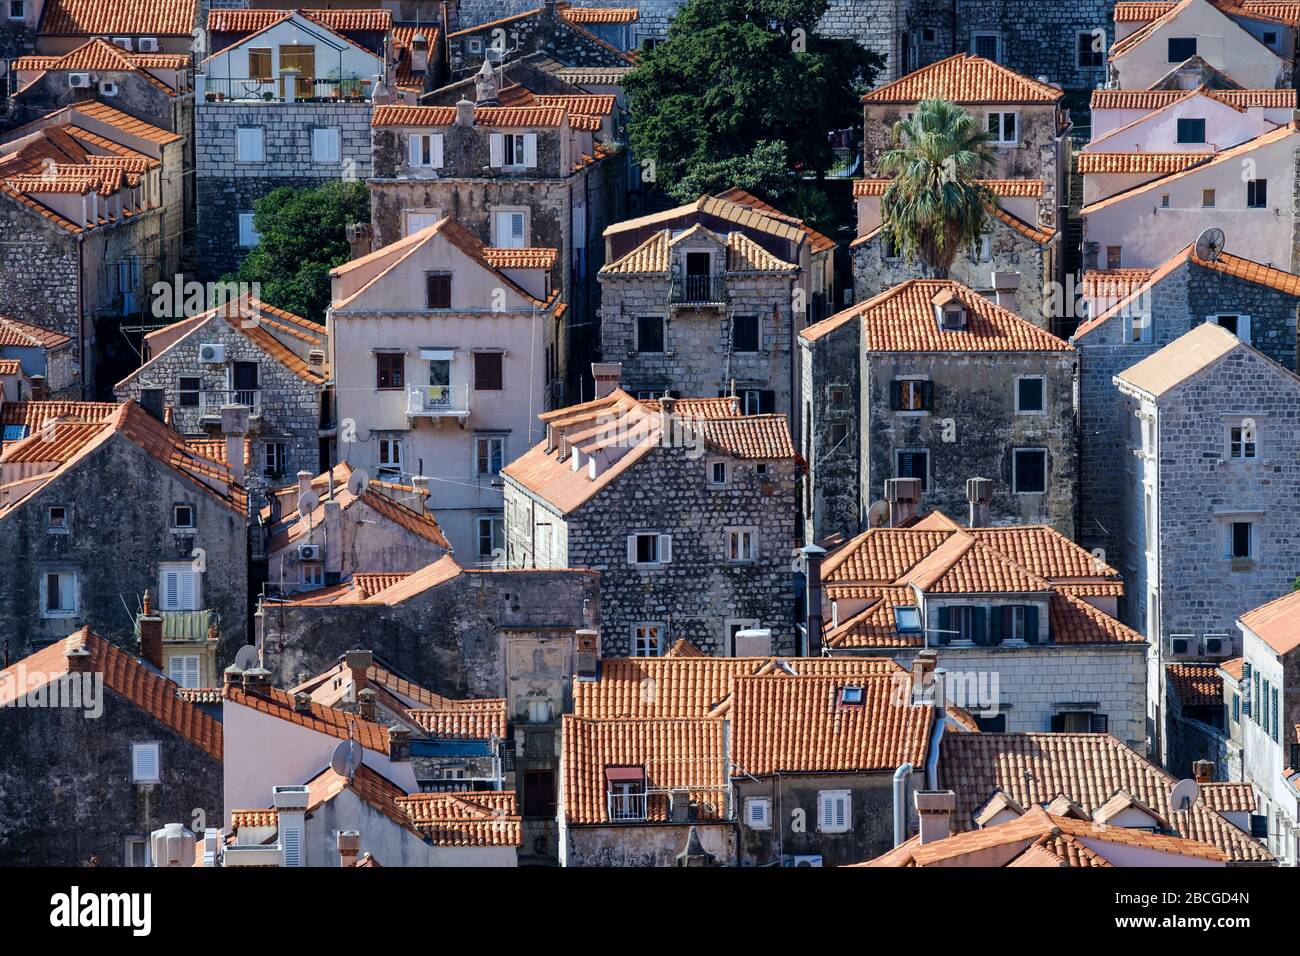 Vue sur la vieille ville de Dubrovnik. Il montre les maisons et les bâtiments densément peuplés et leurs toits en tuiles rouges Banque D'Images